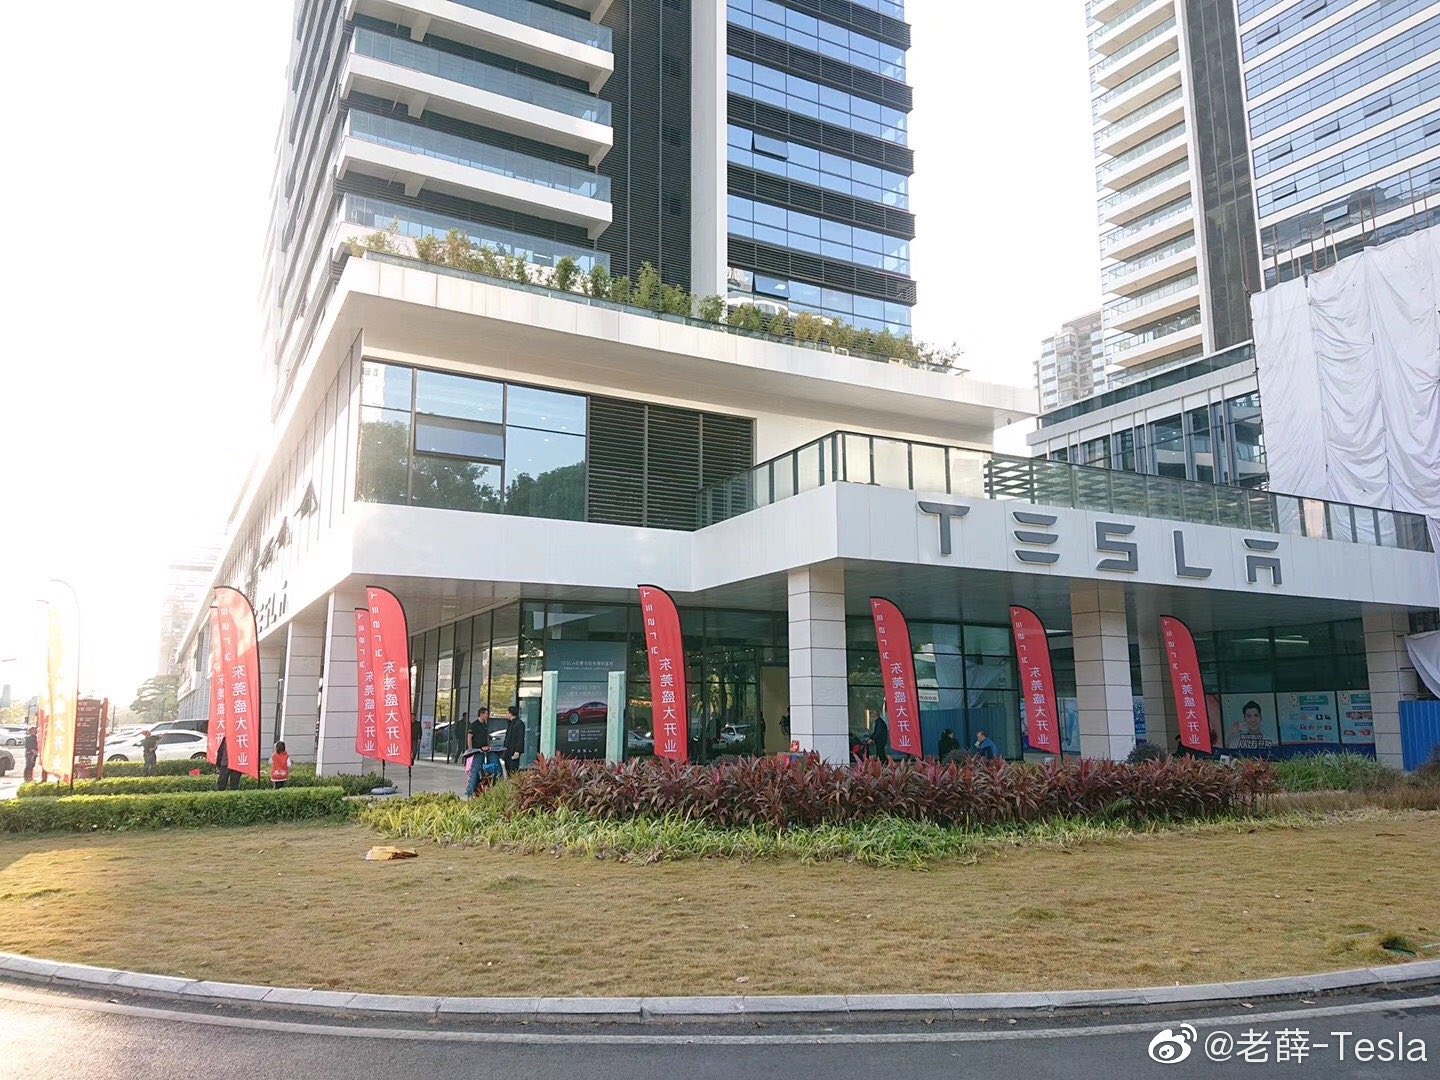 Tesla Service Center in Dongguan Guangzhou, China